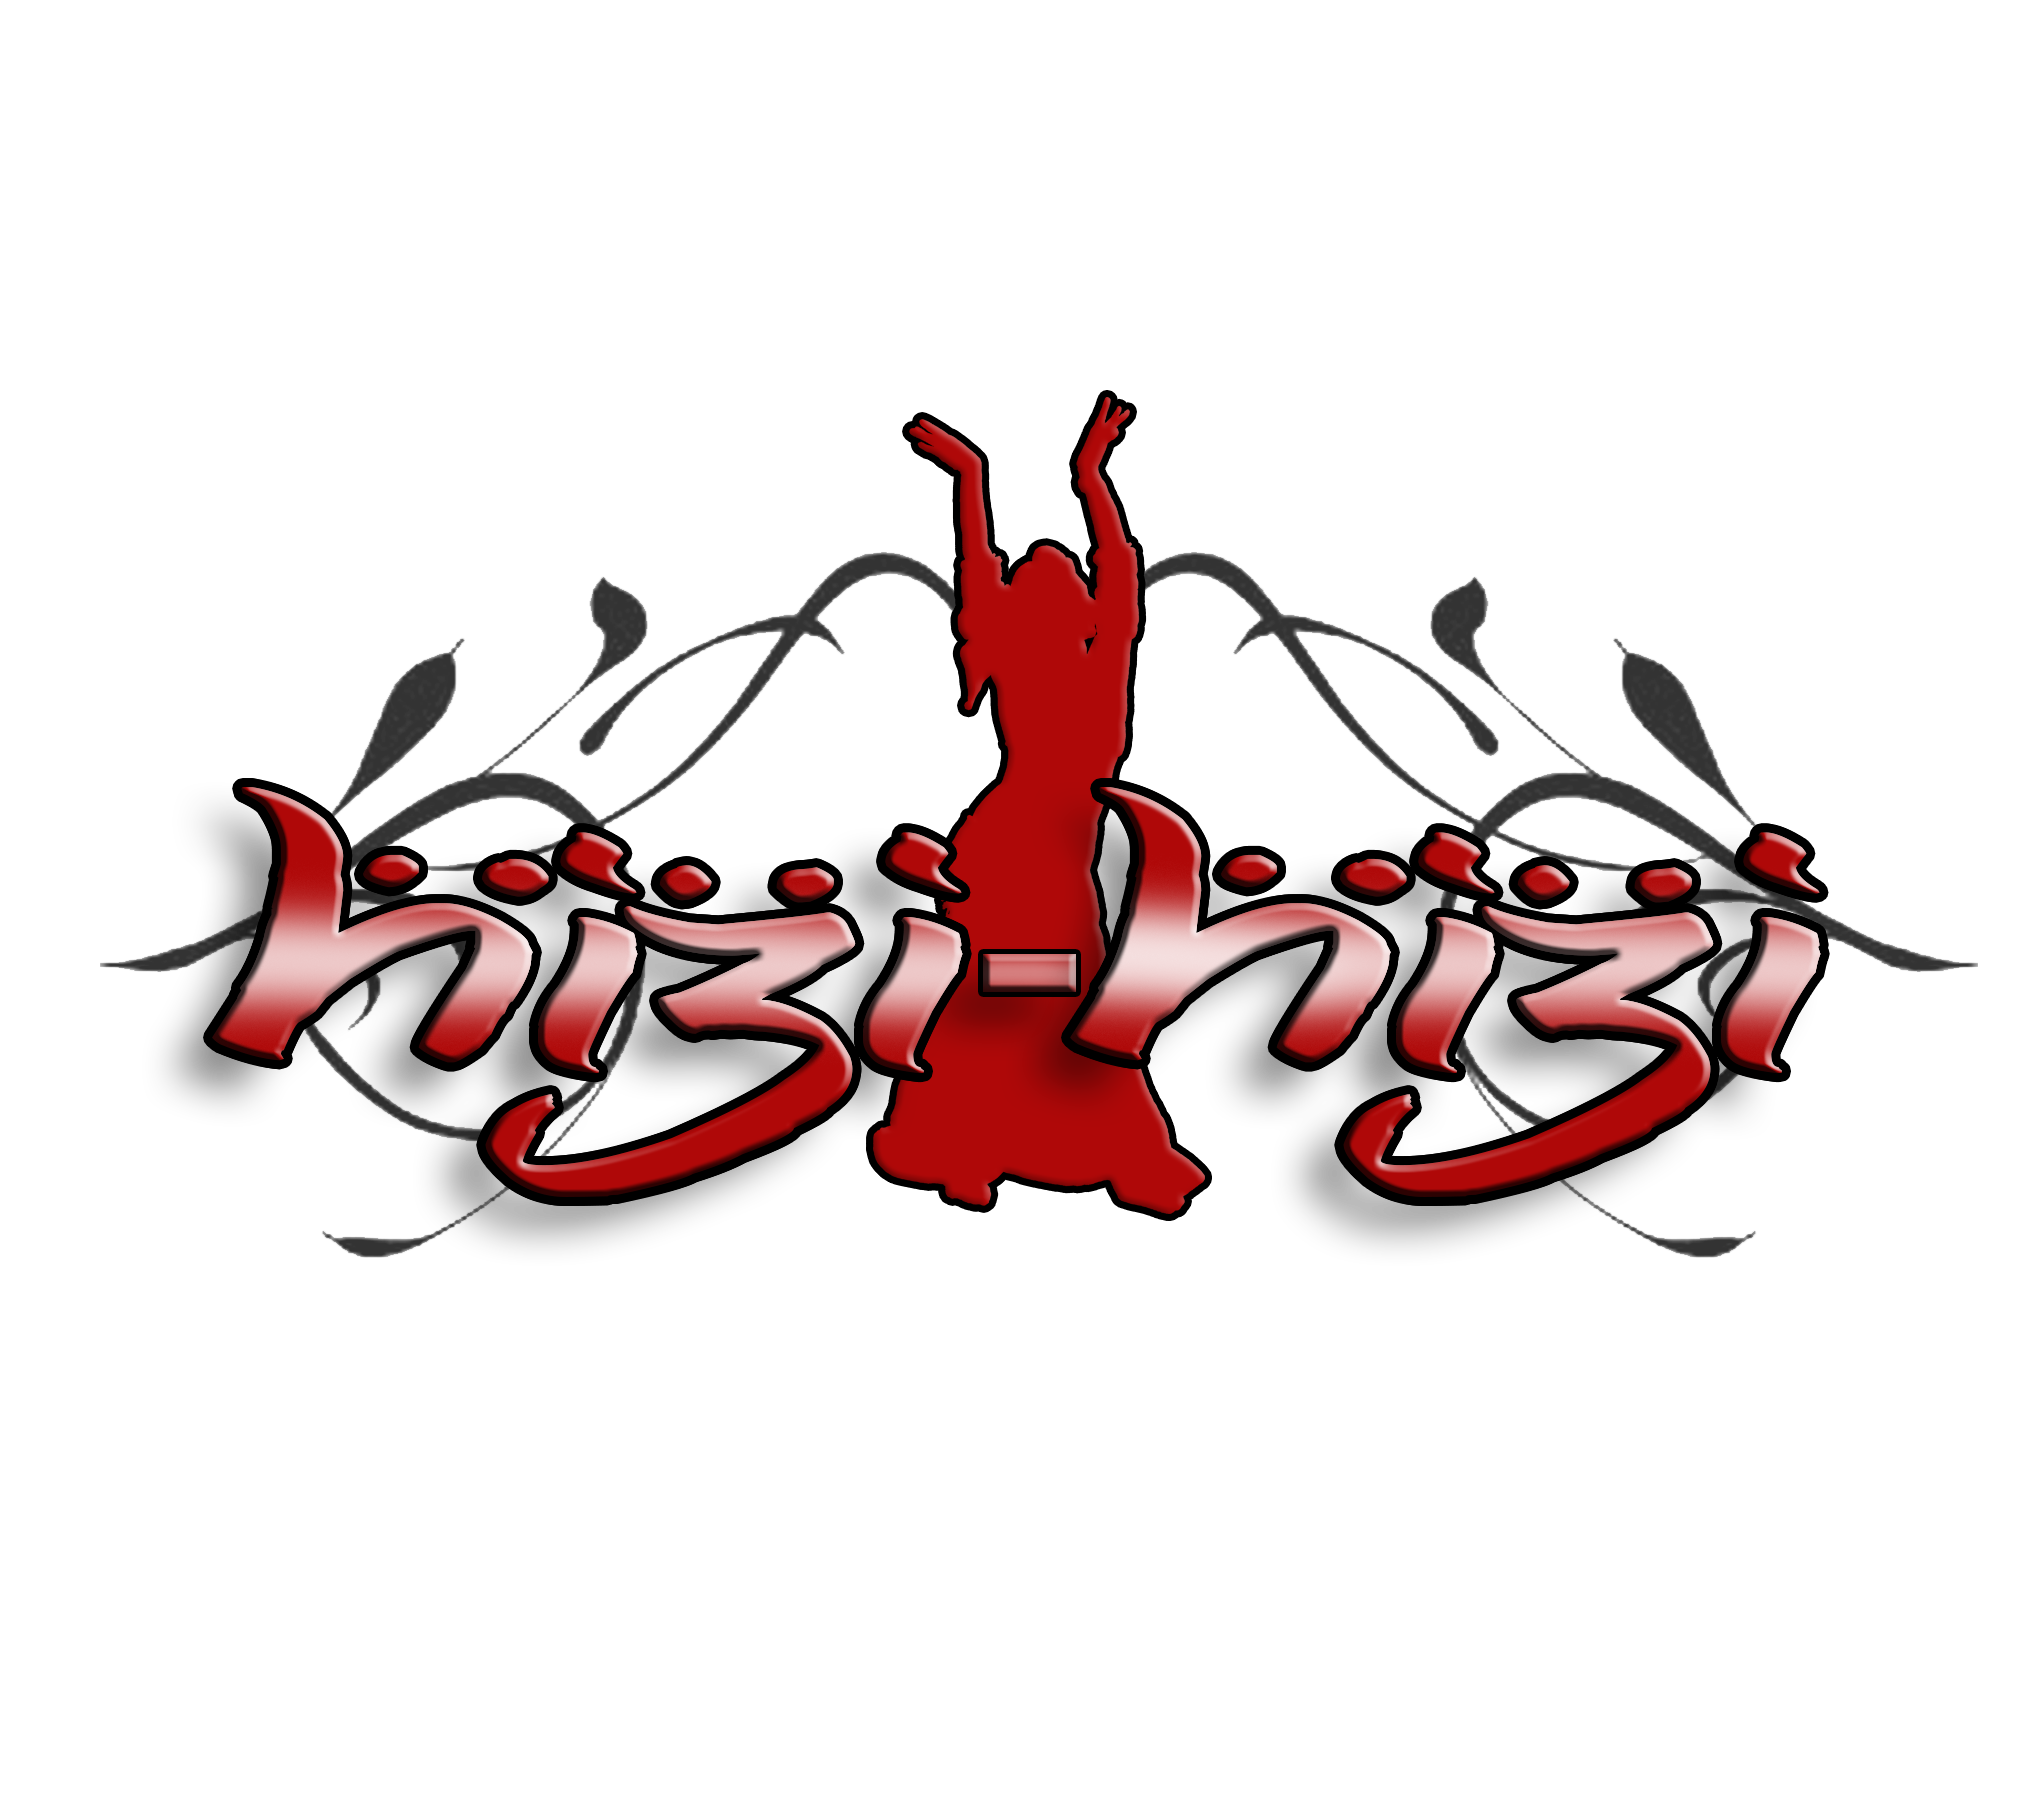 Hizi-Hizi Belly Dance Logo